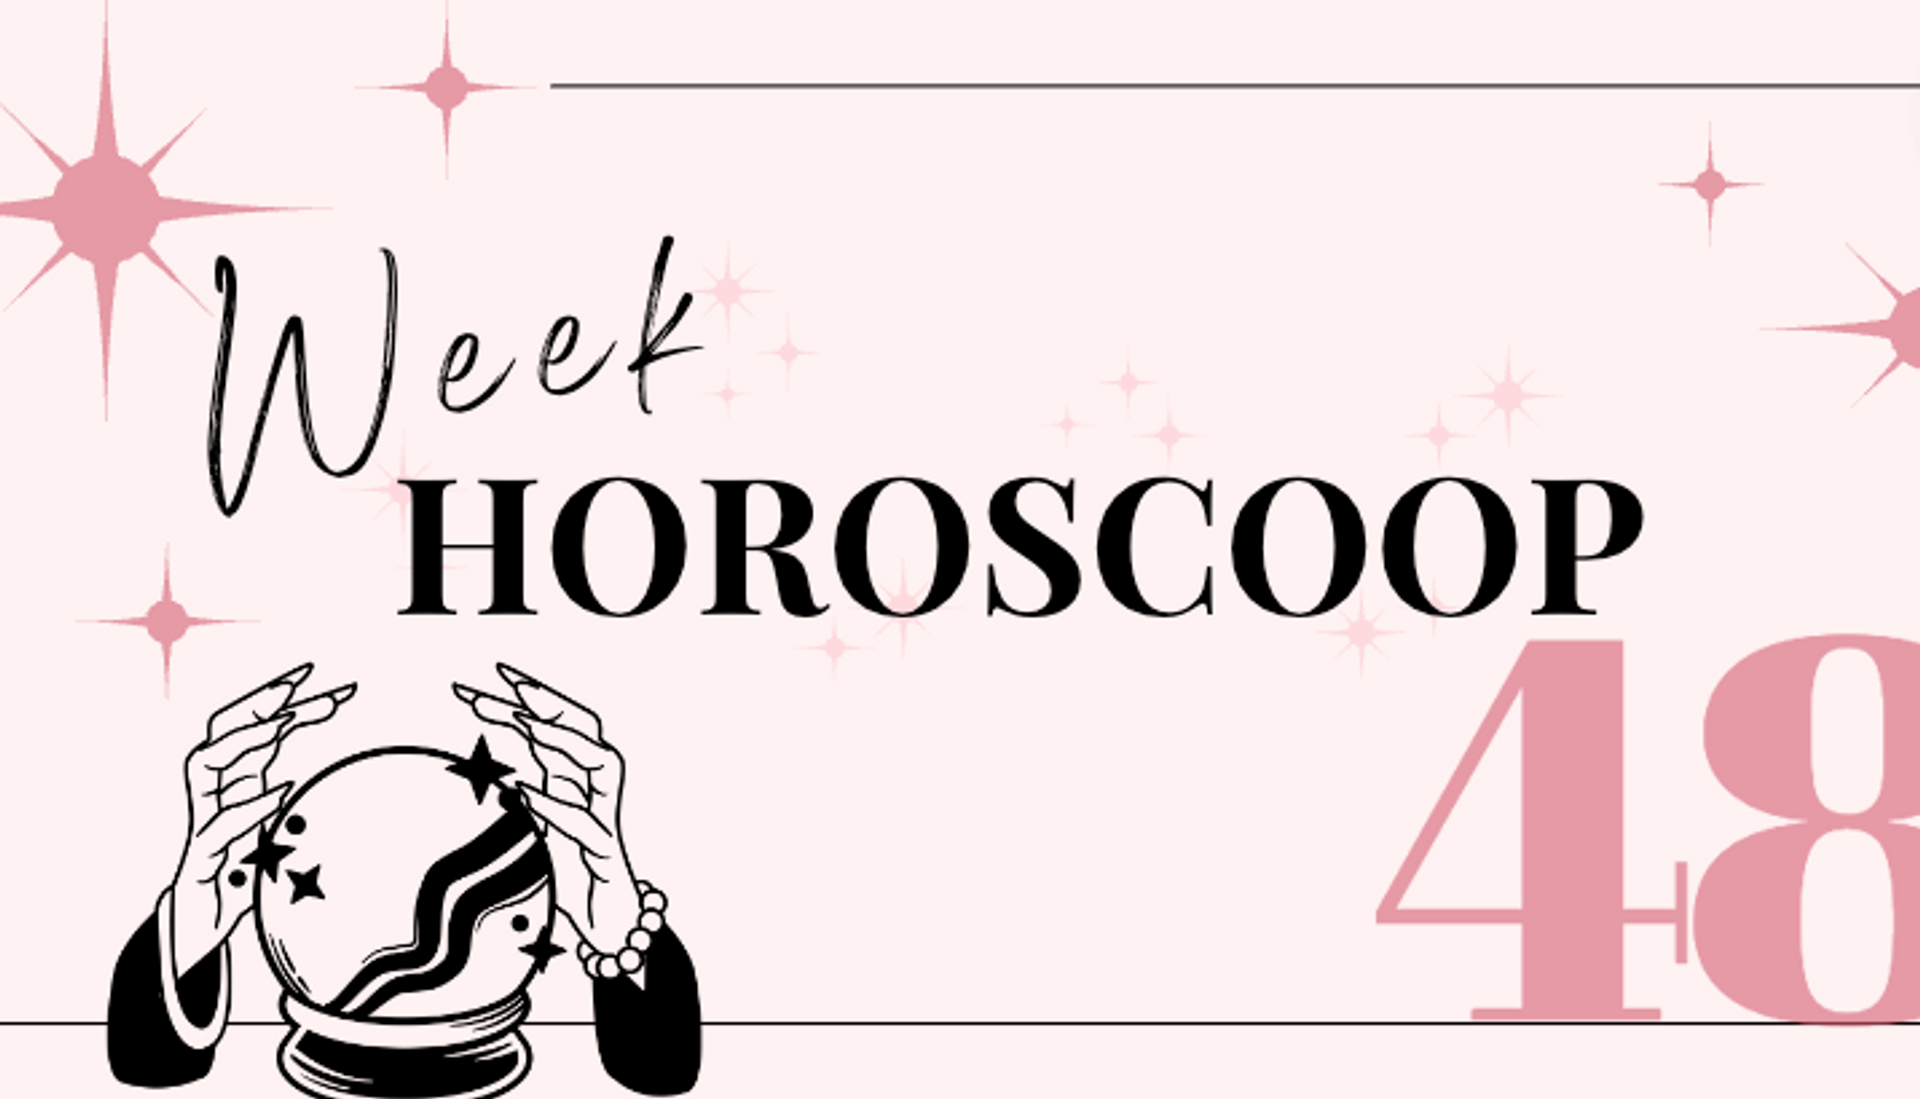 weekhoroscoop-week-48